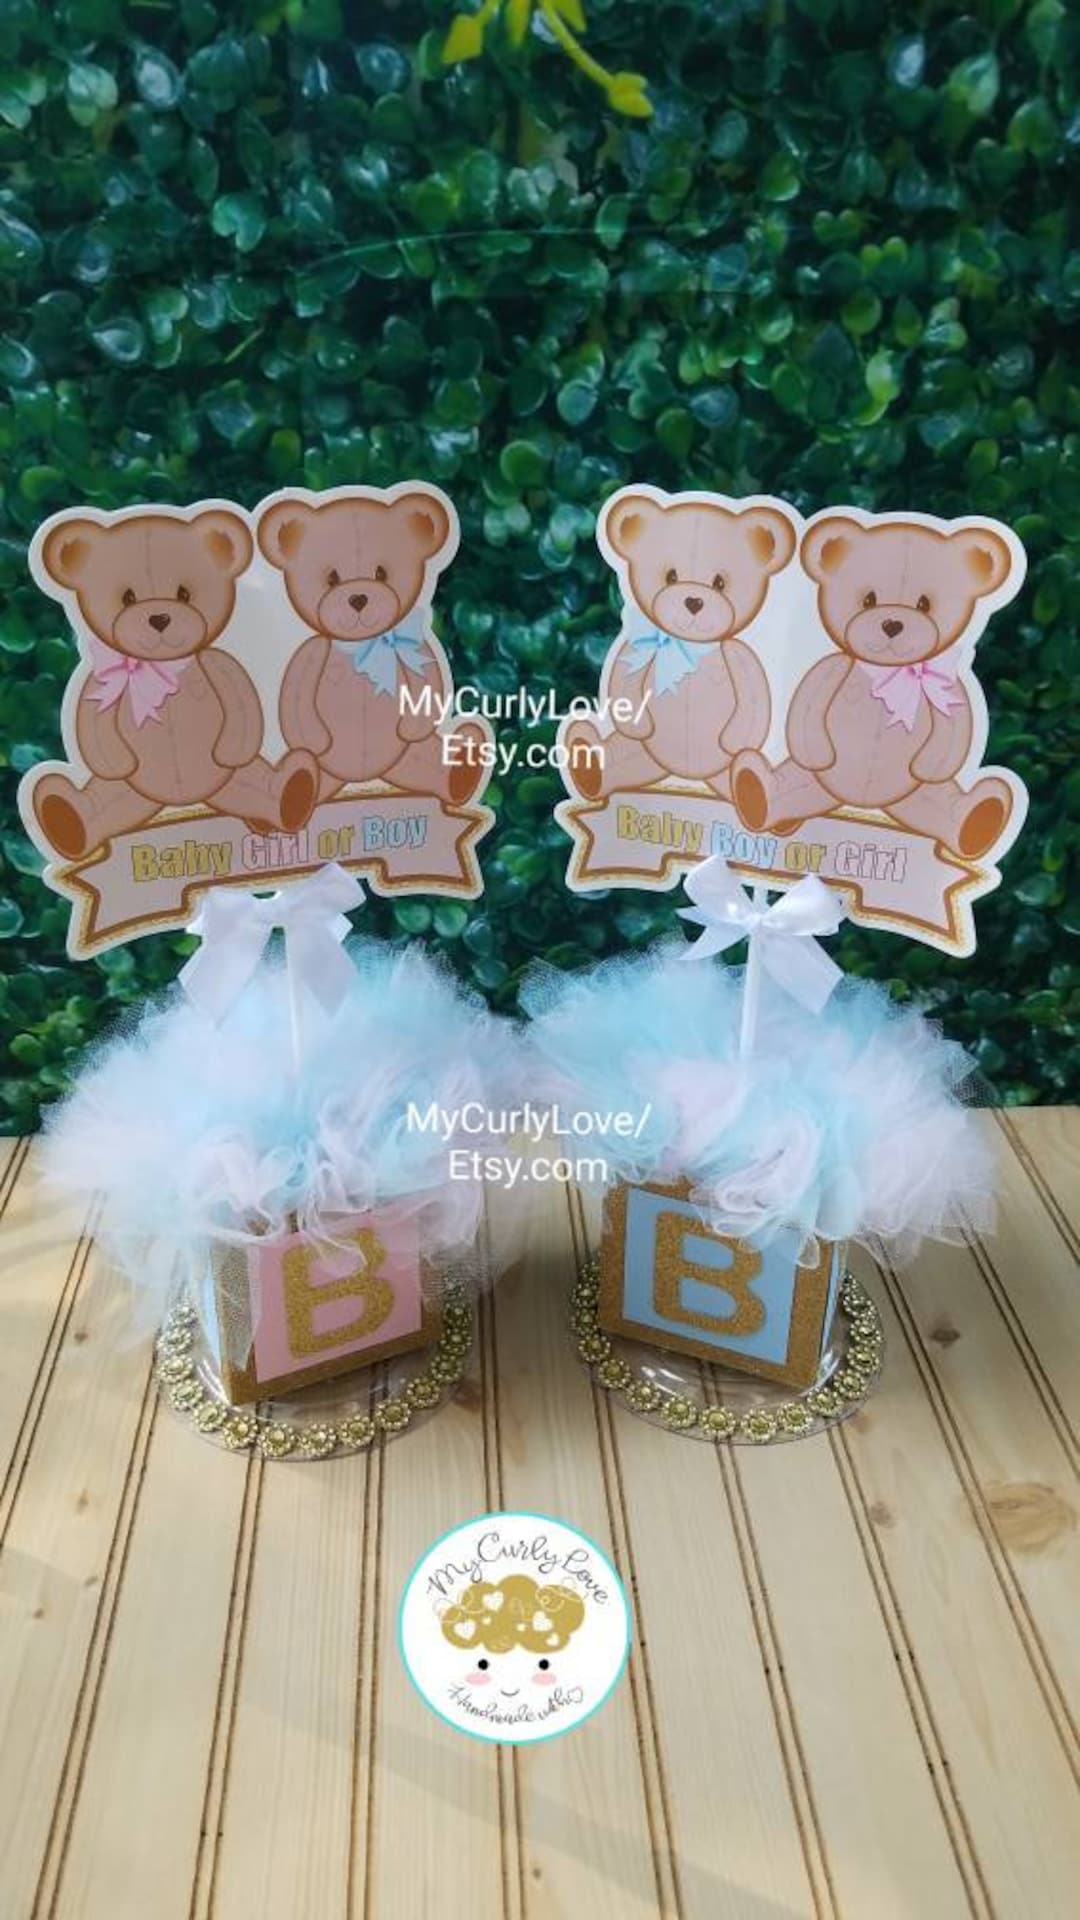 ∞ twinnie.kh / teddy gift shop ∞ on Instagram: Birthday care bear set 💖